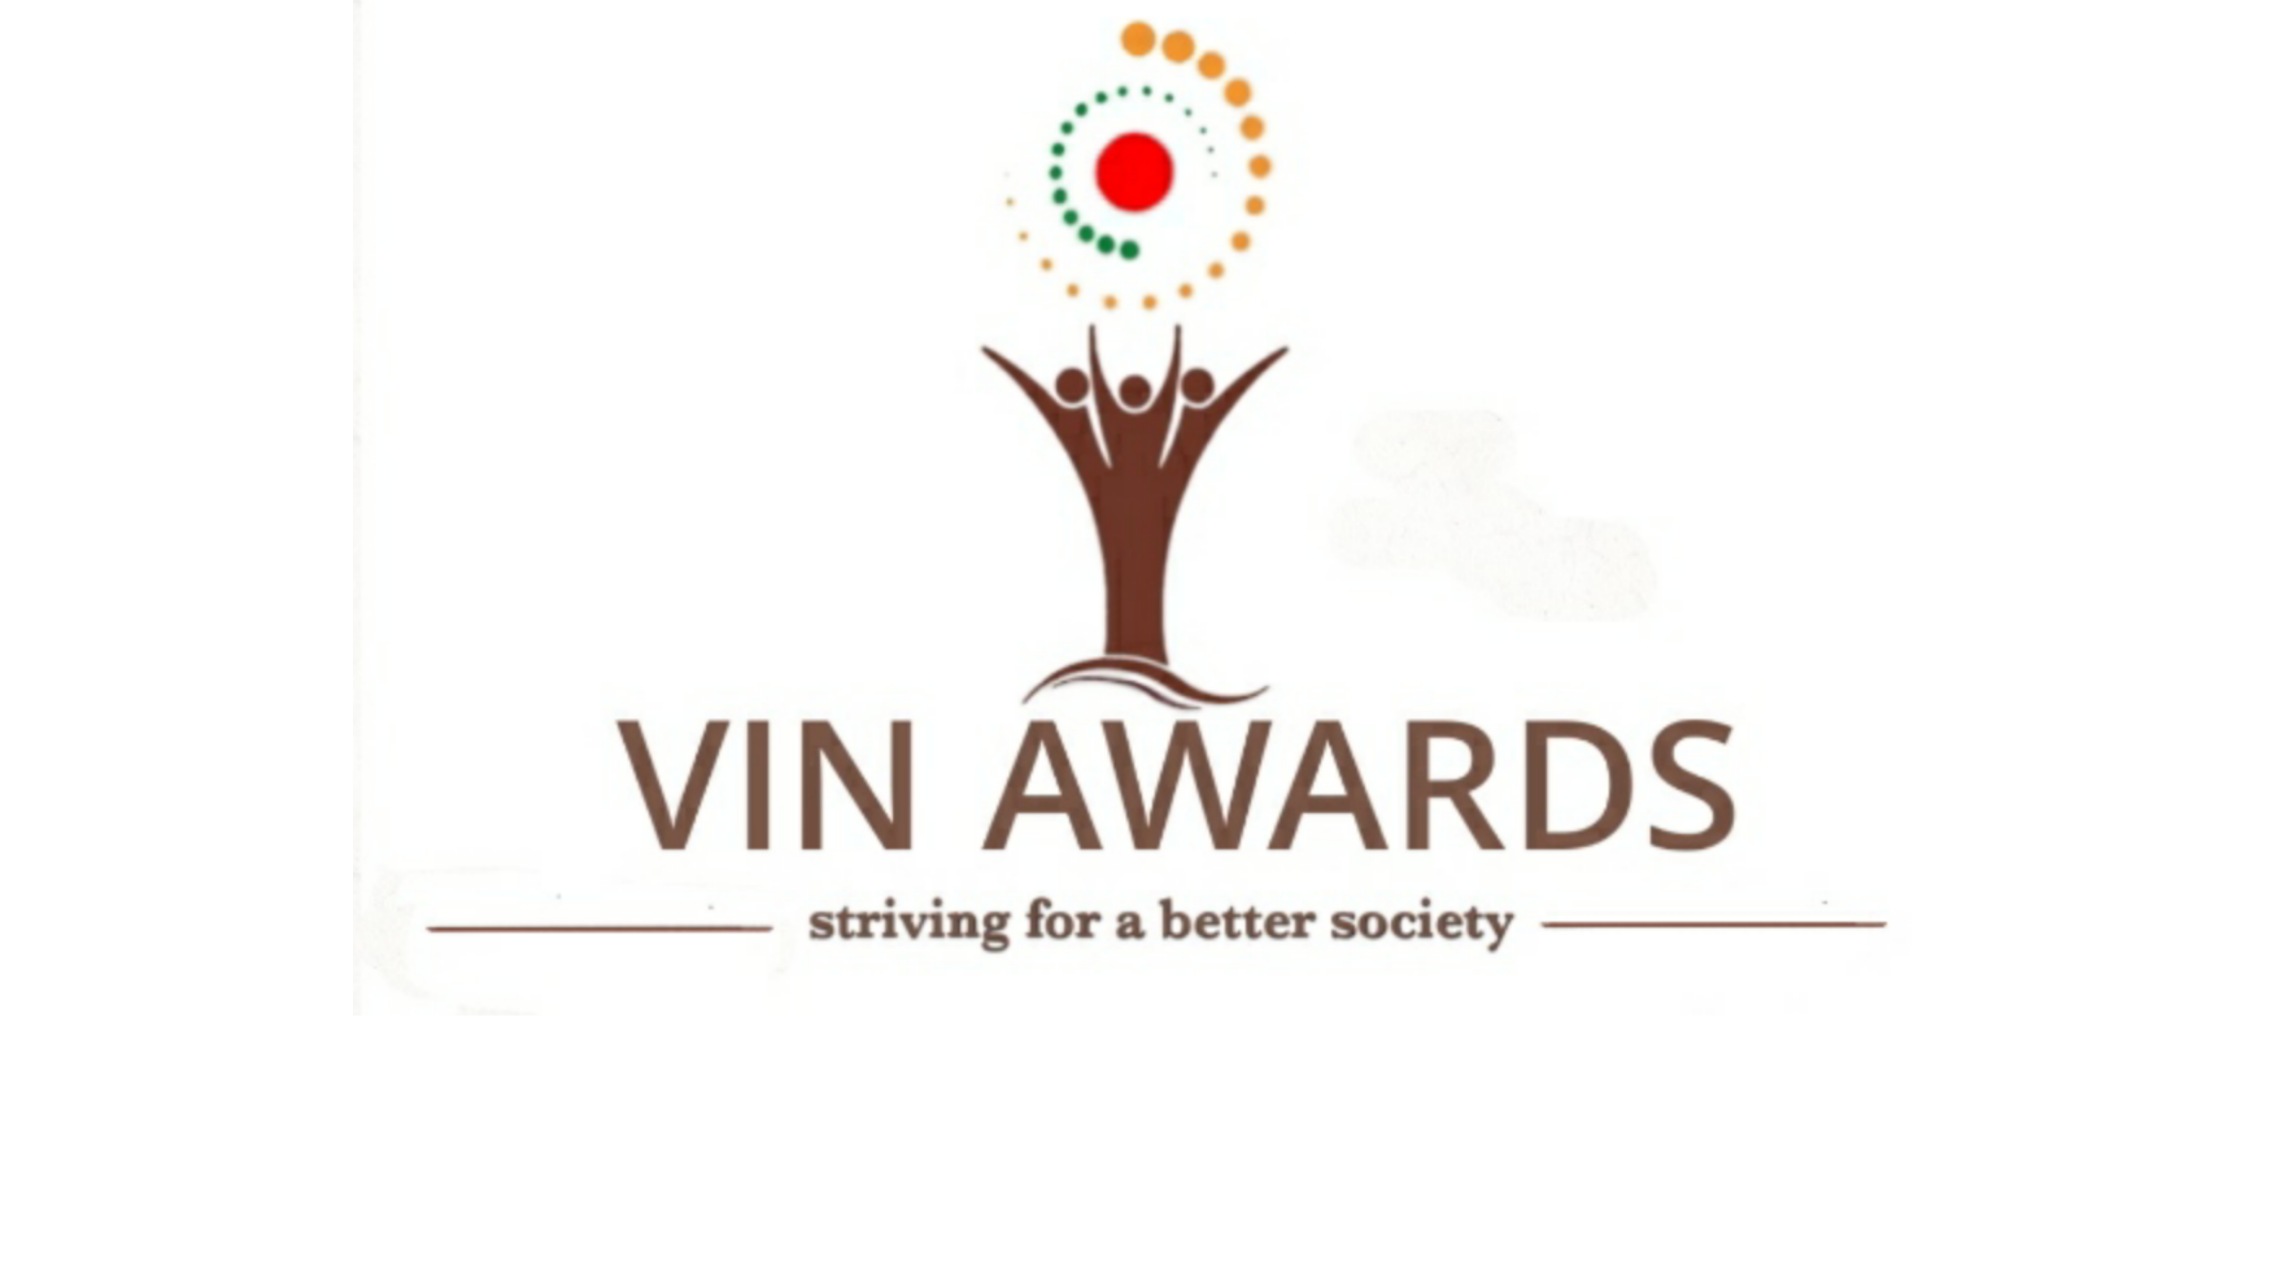 VIN Awards, Central Delhi, Delhi, India